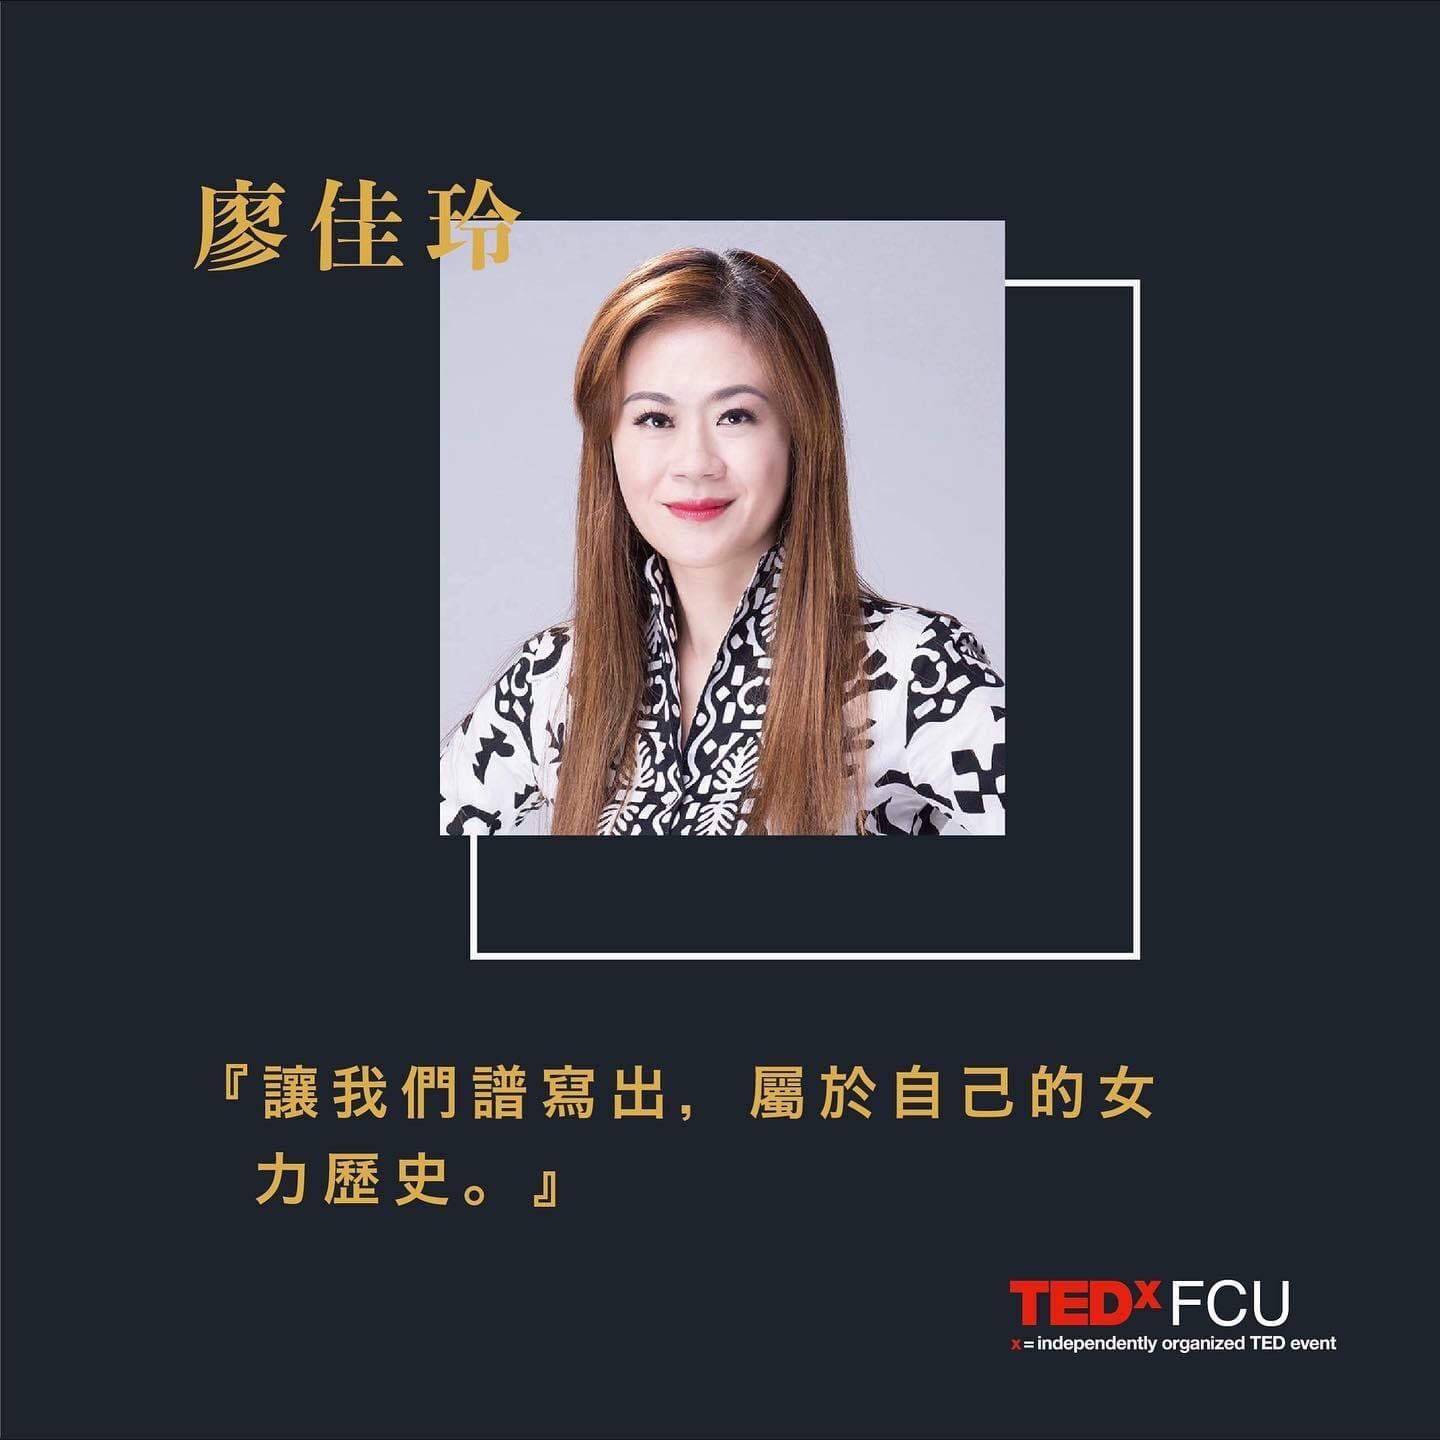 104級校友廖佳玲北歐設計顧問公司執行總監人生第一場TED演講，已經通過美國TED總部認證上線了。